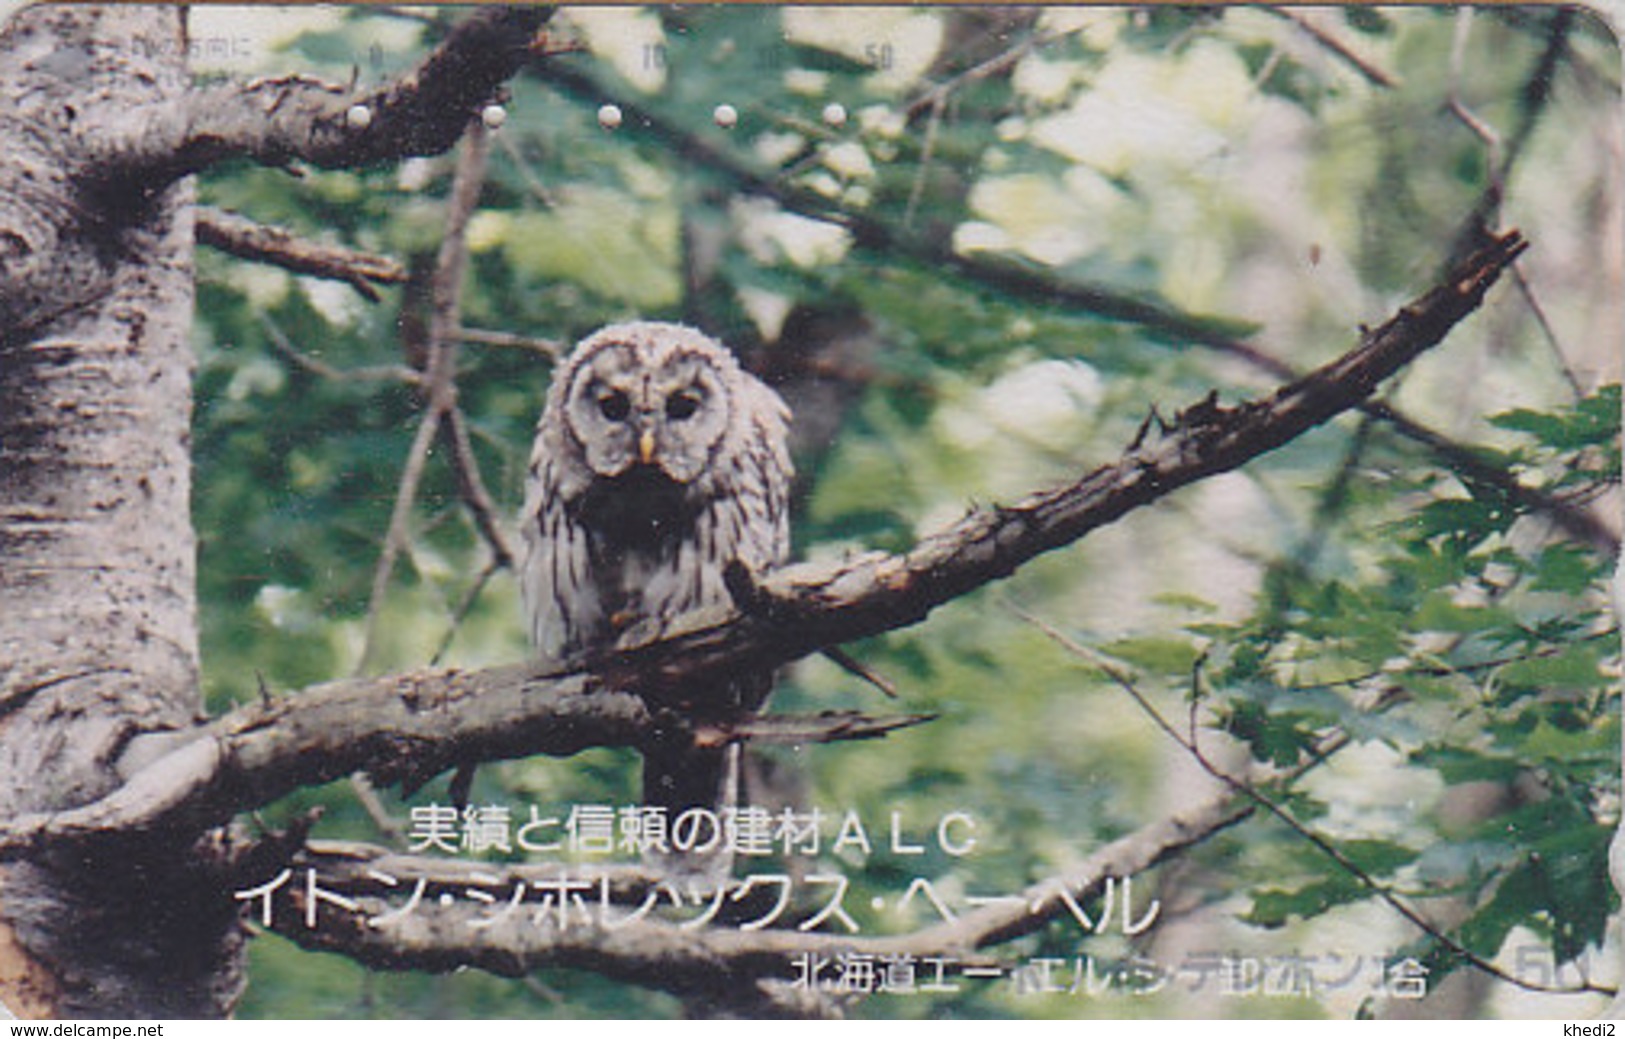 Télécarte Japon / 110-011 - ANIMAL - OISEAU - HIBOU CHOUETTE HULOTTE - OWL BIRD Japan Phonecard - EULE TK - 4283 - Gufi E Civette